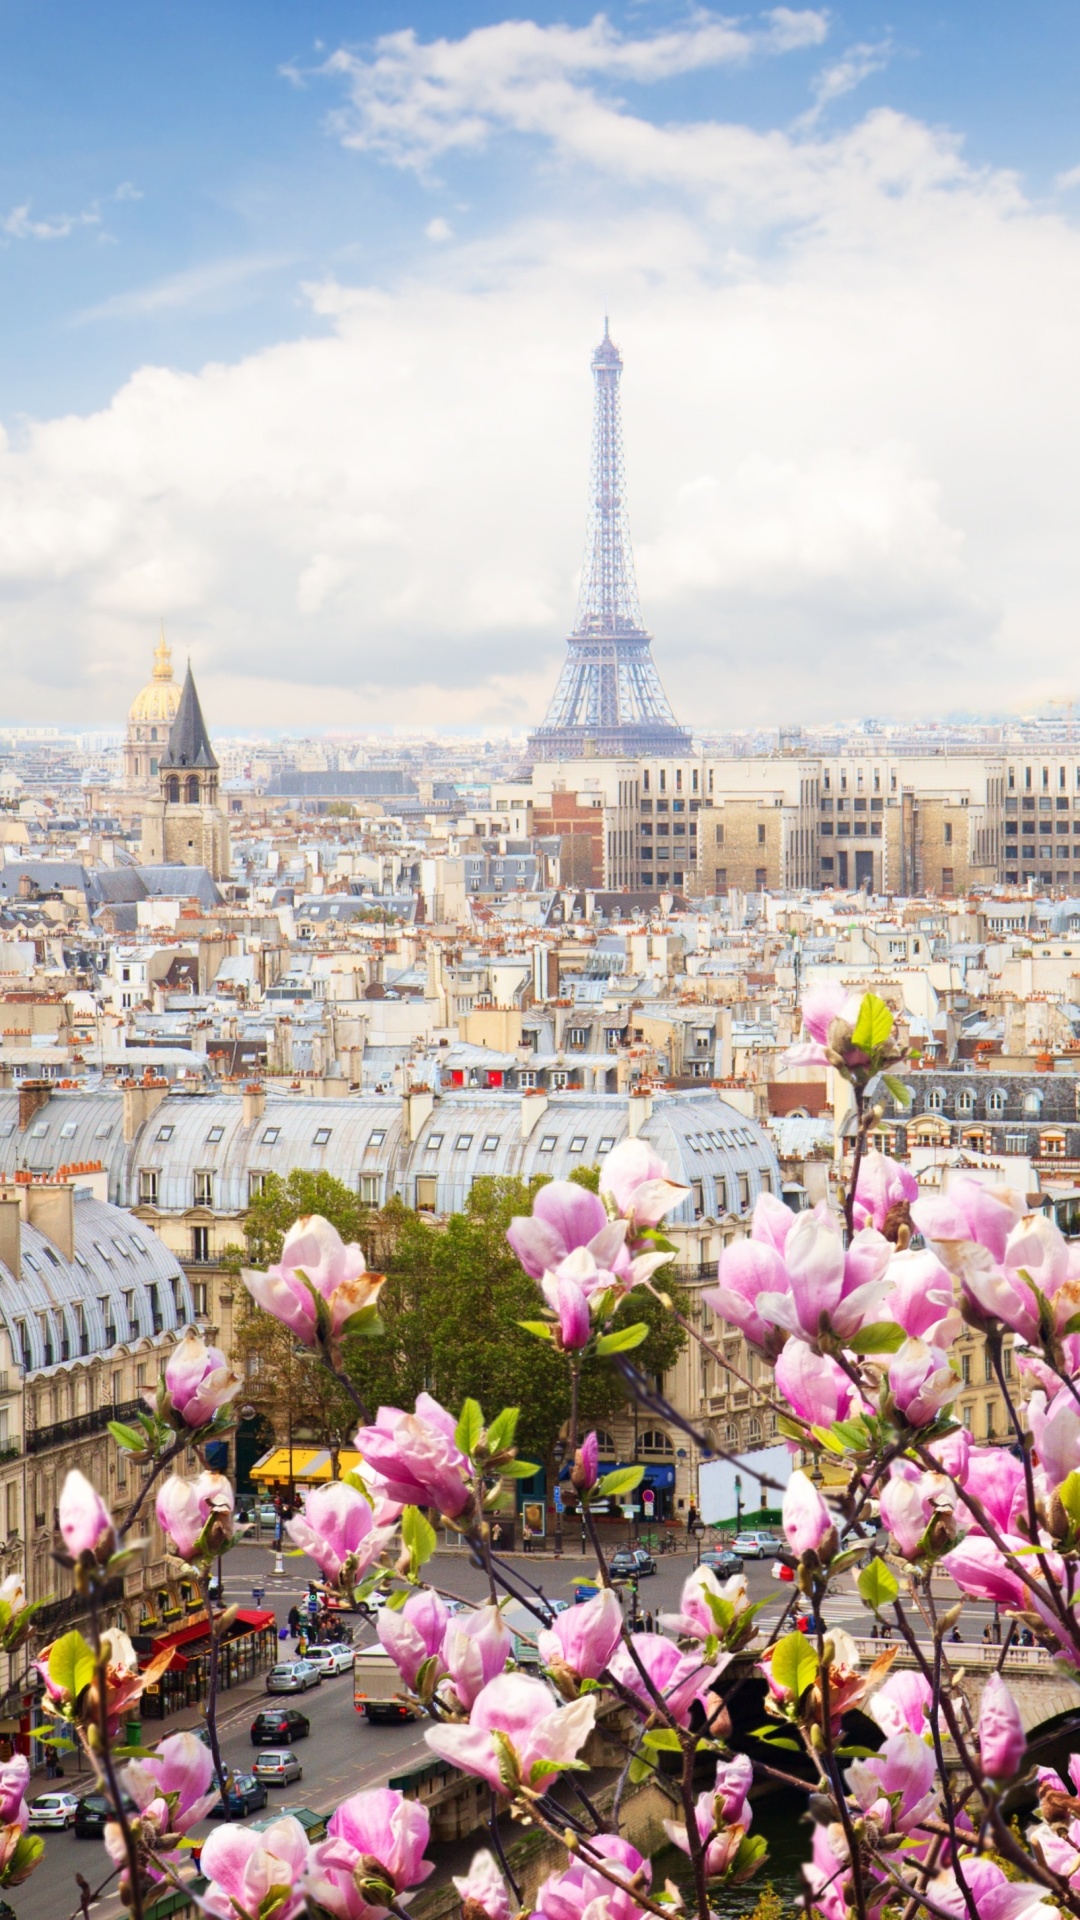 Das Paris Sakura Location for Instagram Wallpaper 1080x1920